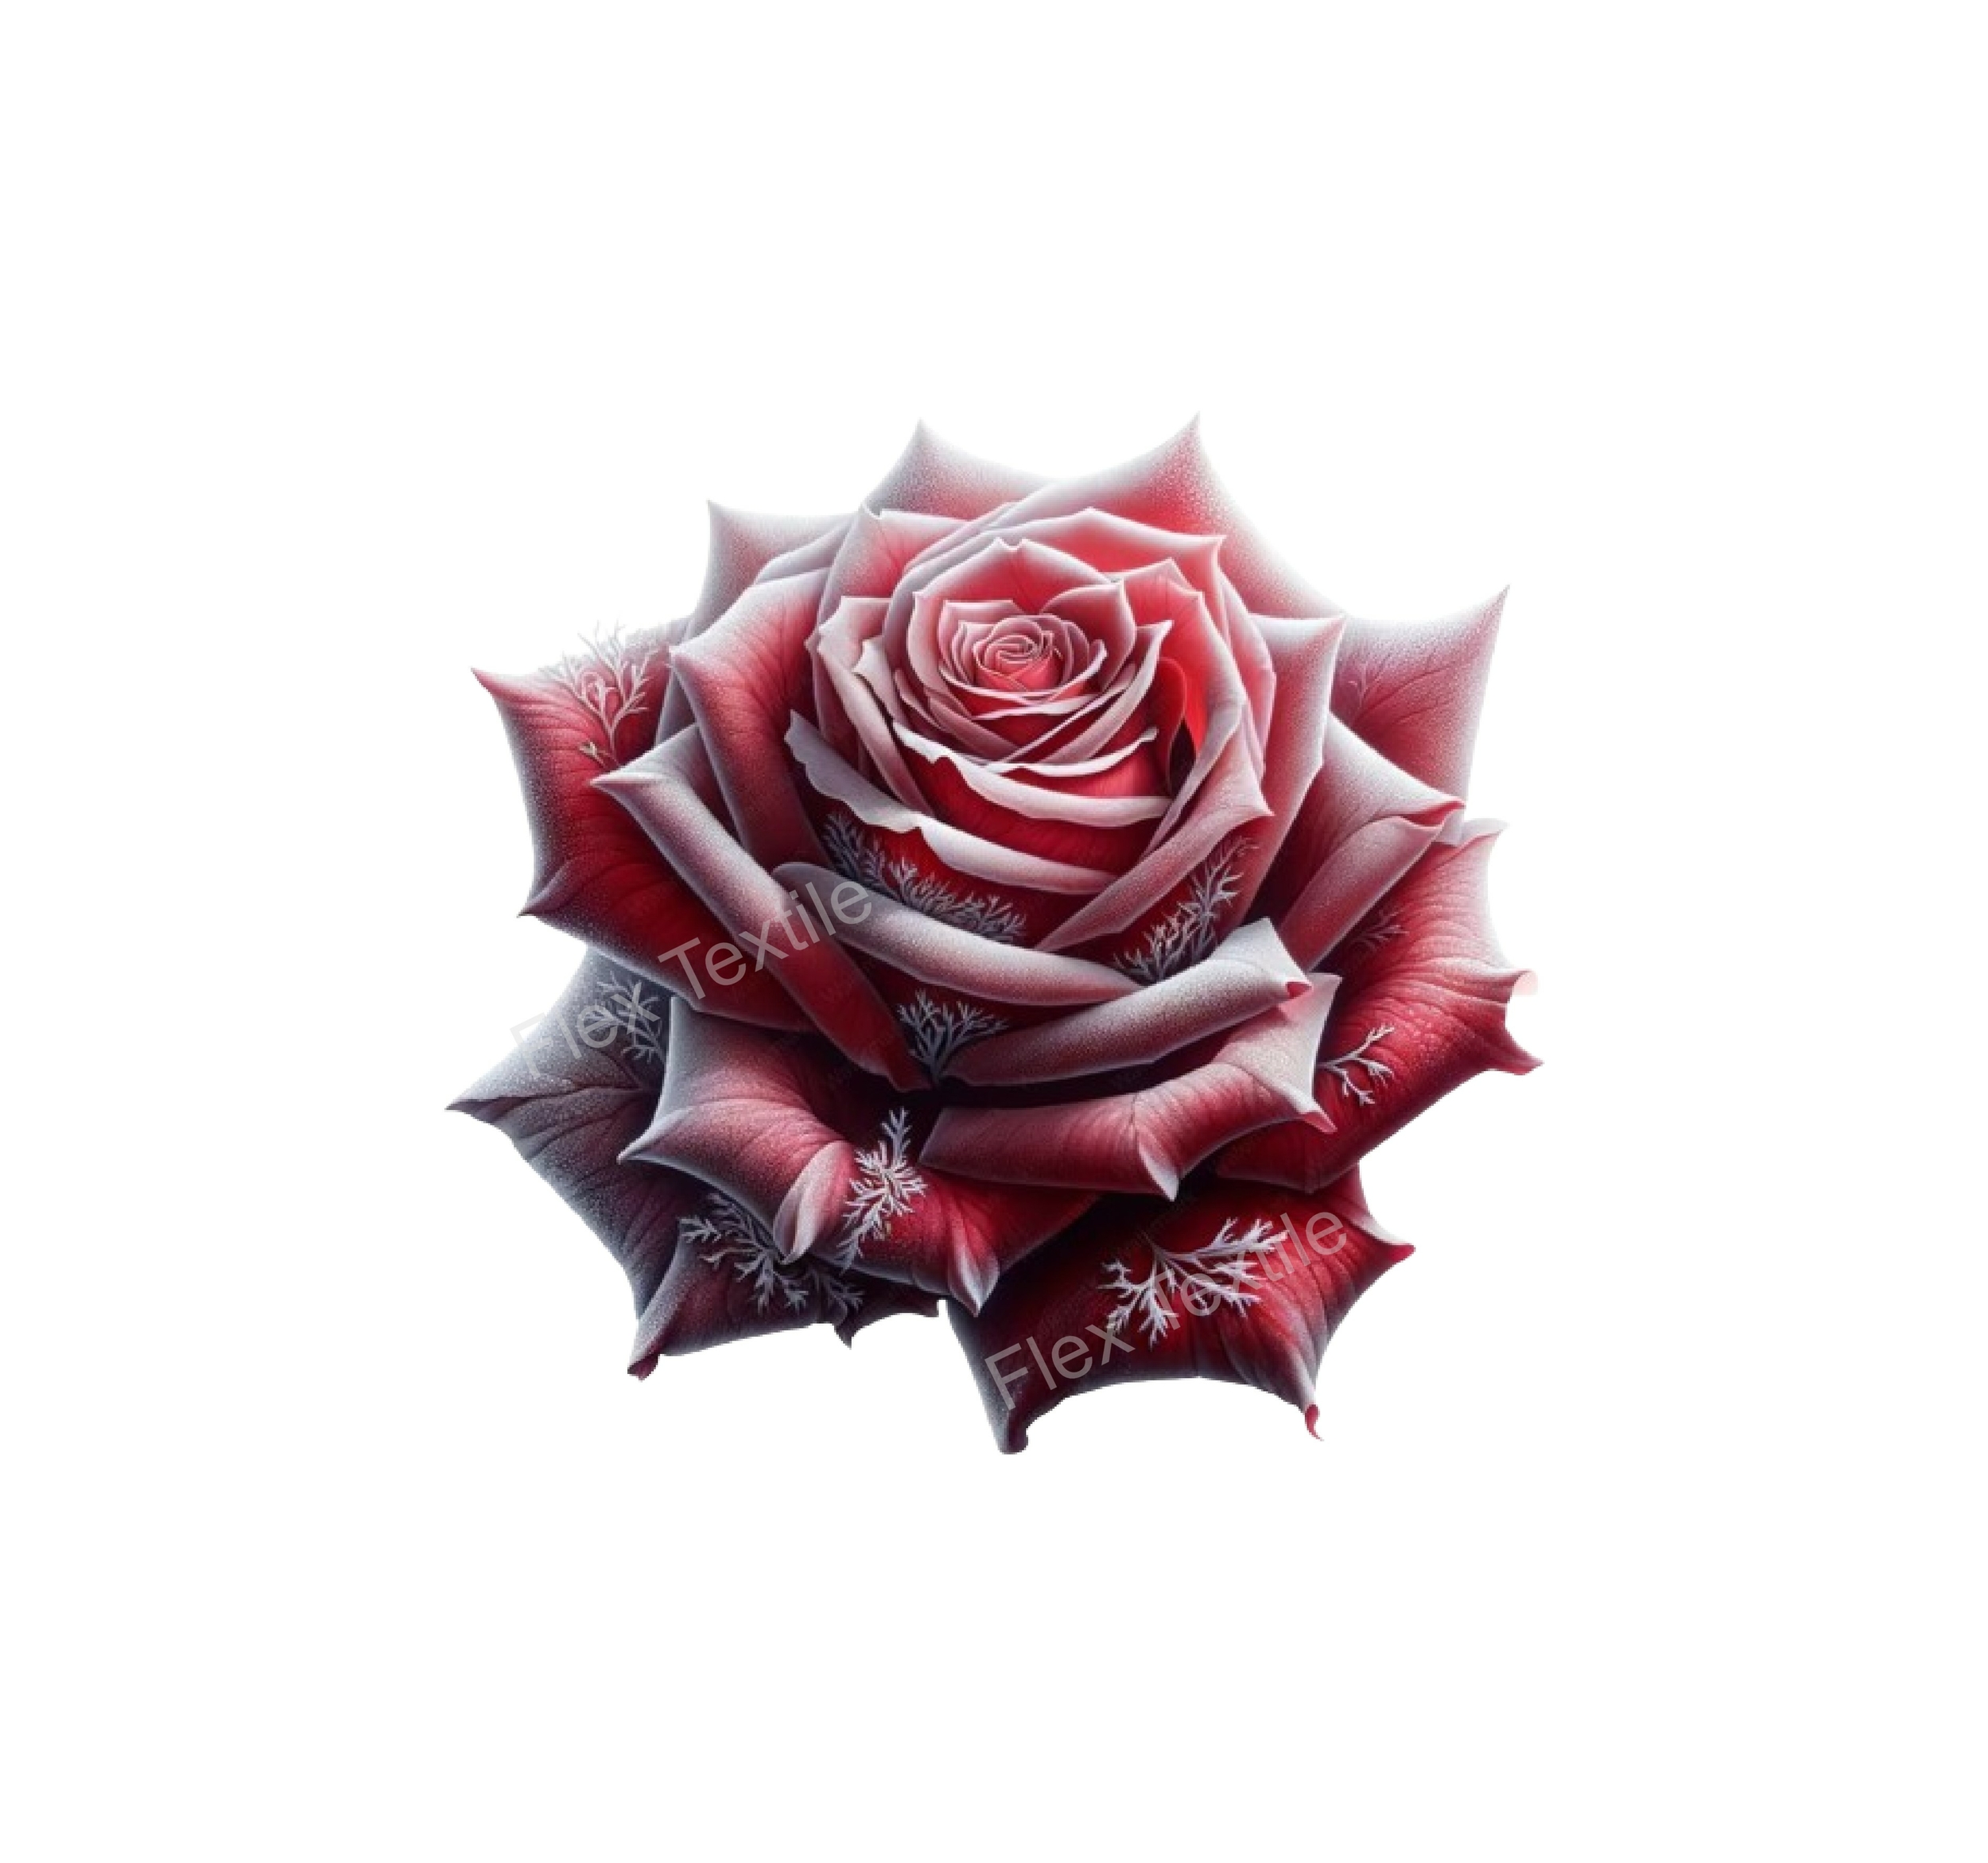 Rose givrée impression dtf flex textile